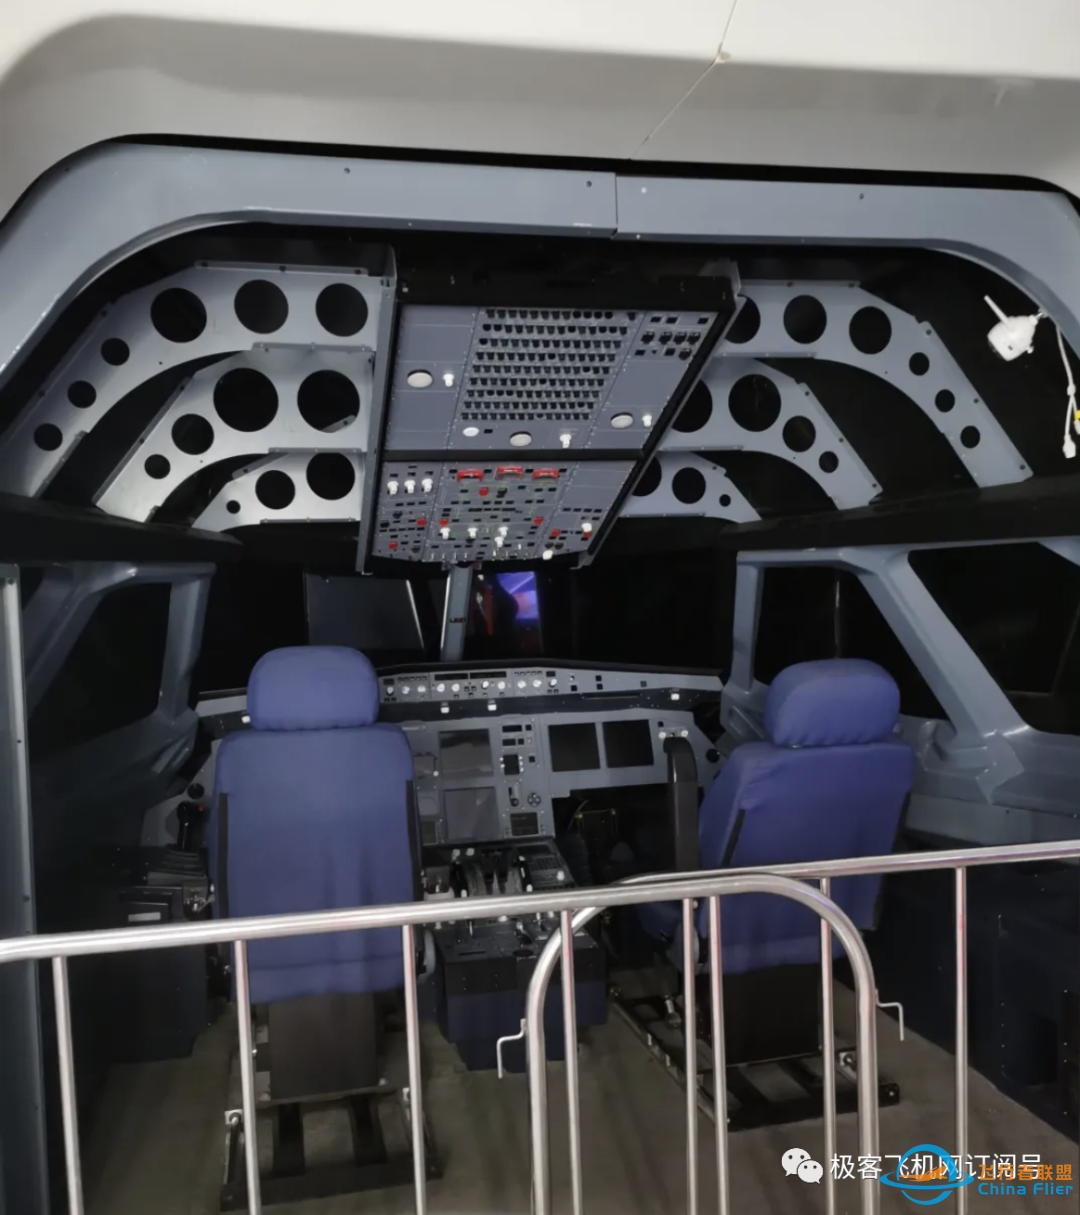 空客A320飞行模拟器出售,全新状态,1:1还原A320驾驶舱环境,适合科普教学!-2406 